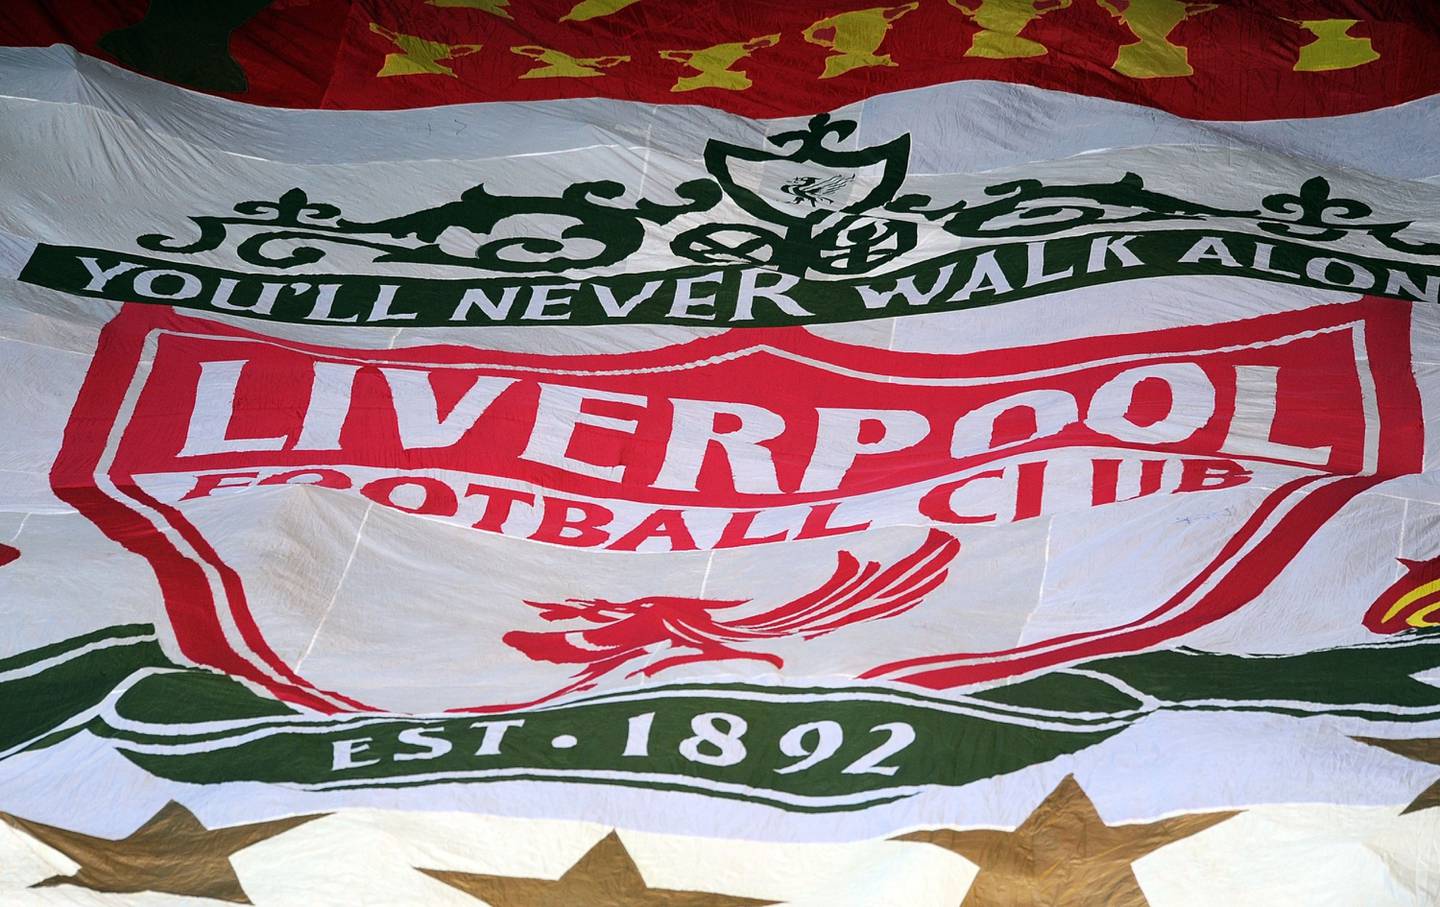 Los aficionados del Liverpool muestran una pancarta gigante antes del partido de la Barclays Premier League entre el Liverpool y el Southampton en Anfield el 1 de diciembre de 2012 en Liverpool, Inglaterra.